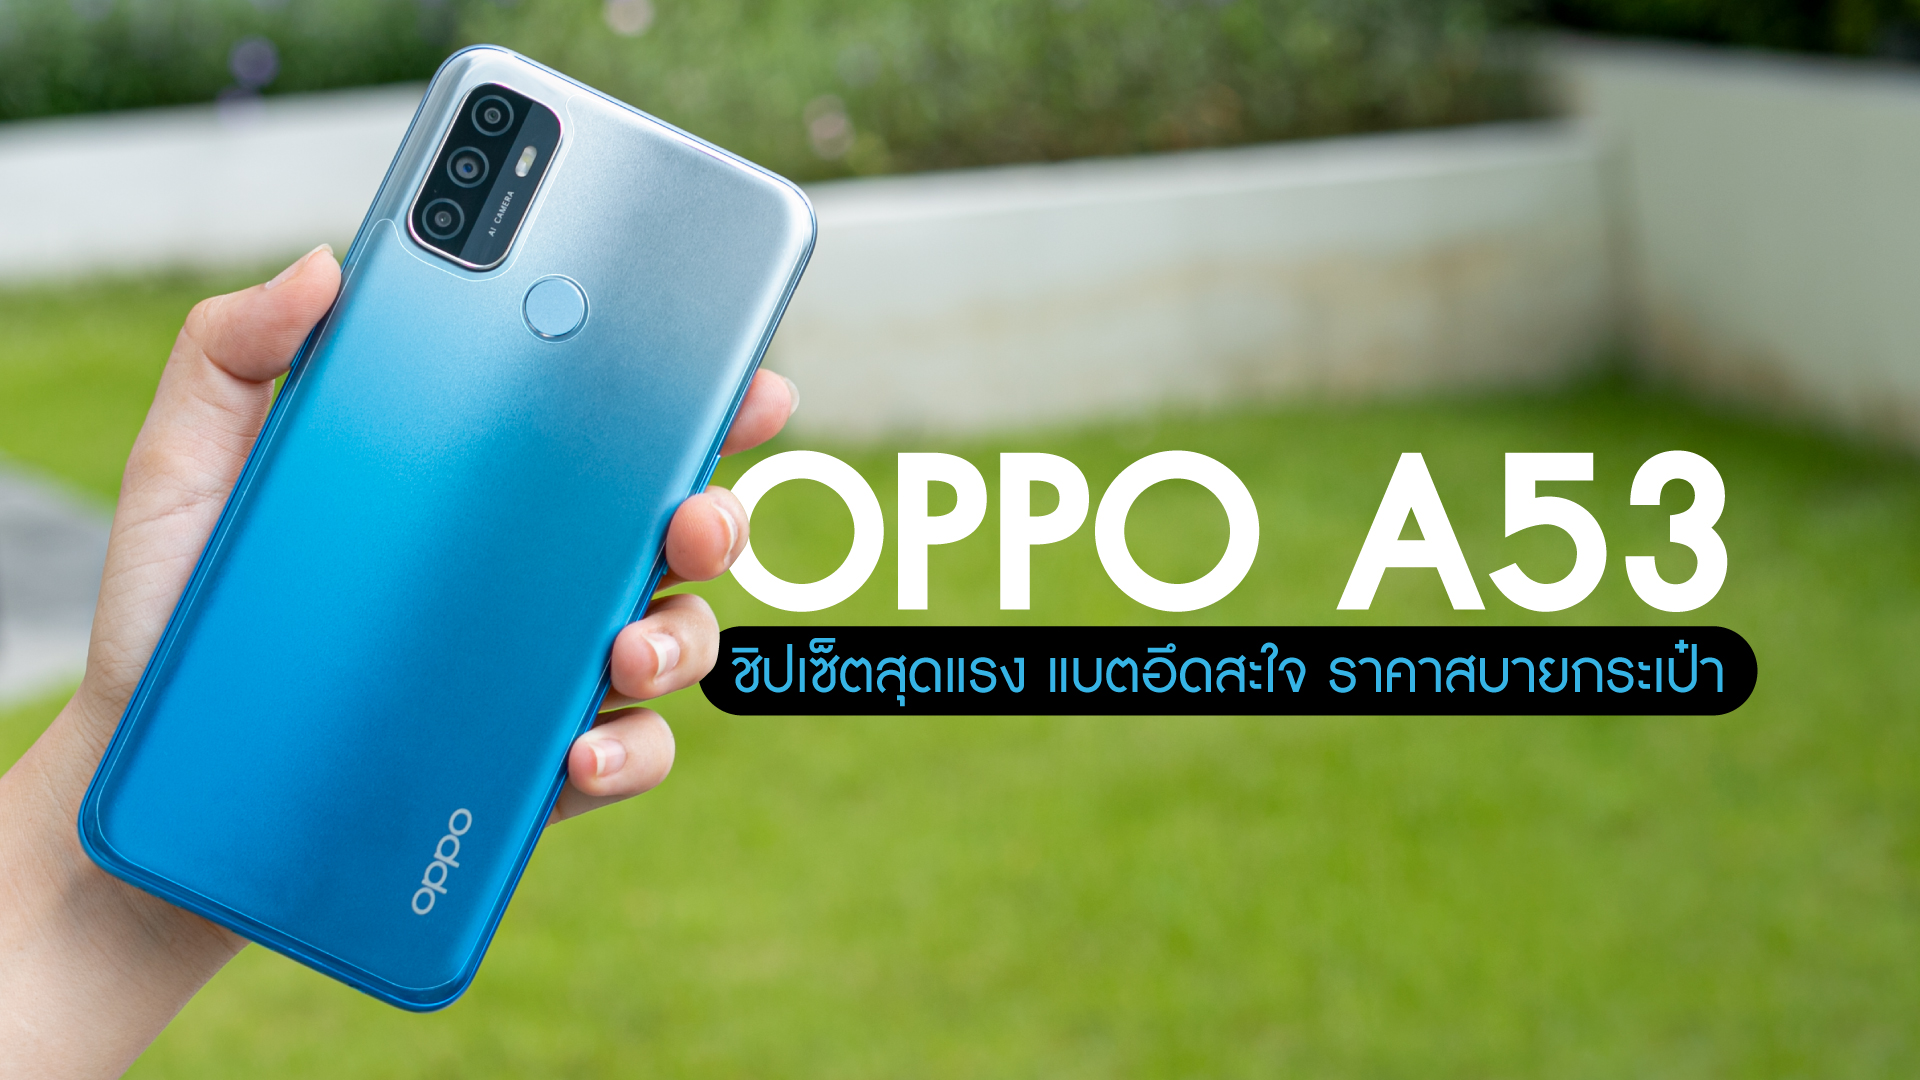 รีวิว OPPO A53 สมาร์ทโฟนชิปเซ็ตสุดแรง แบตอึดสะใจ ในราคาสบายกระเป๋าสุดๆ